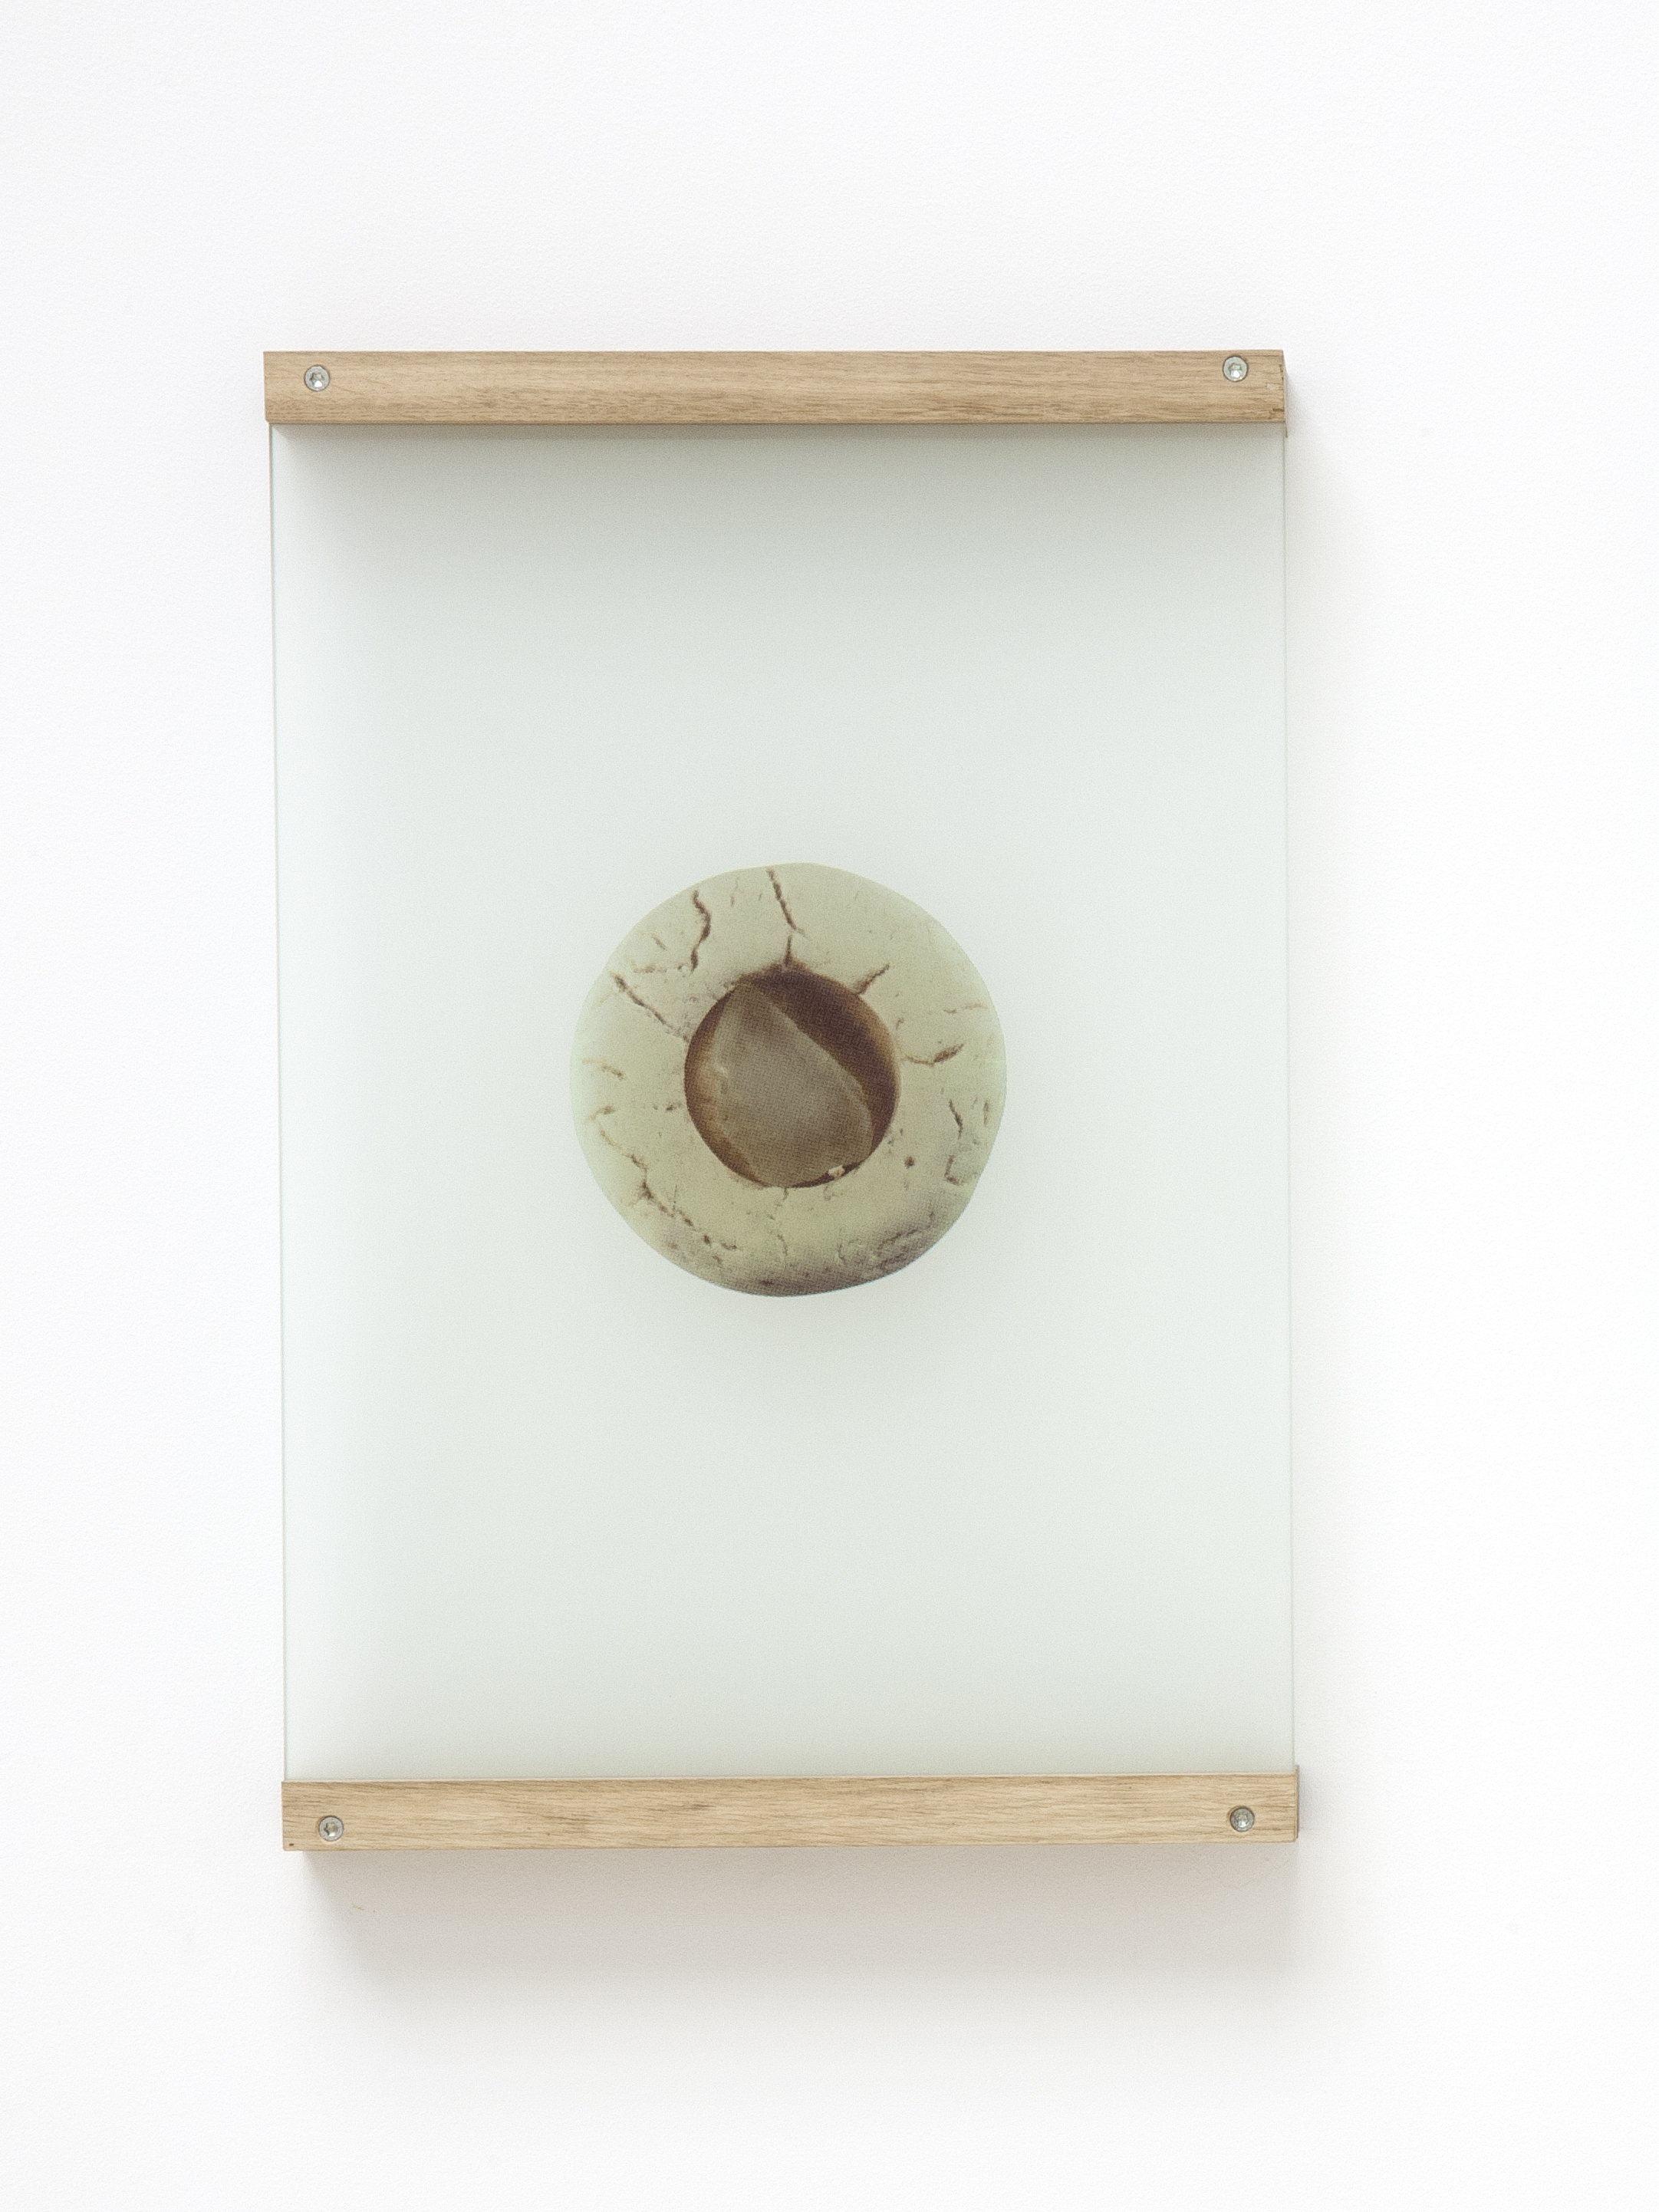 Anne-Charlotte Finel, Sableur, 2019, sérigraphie sur verre sablé (quadrichromie), 55,3 x 40 x 0,6 cm